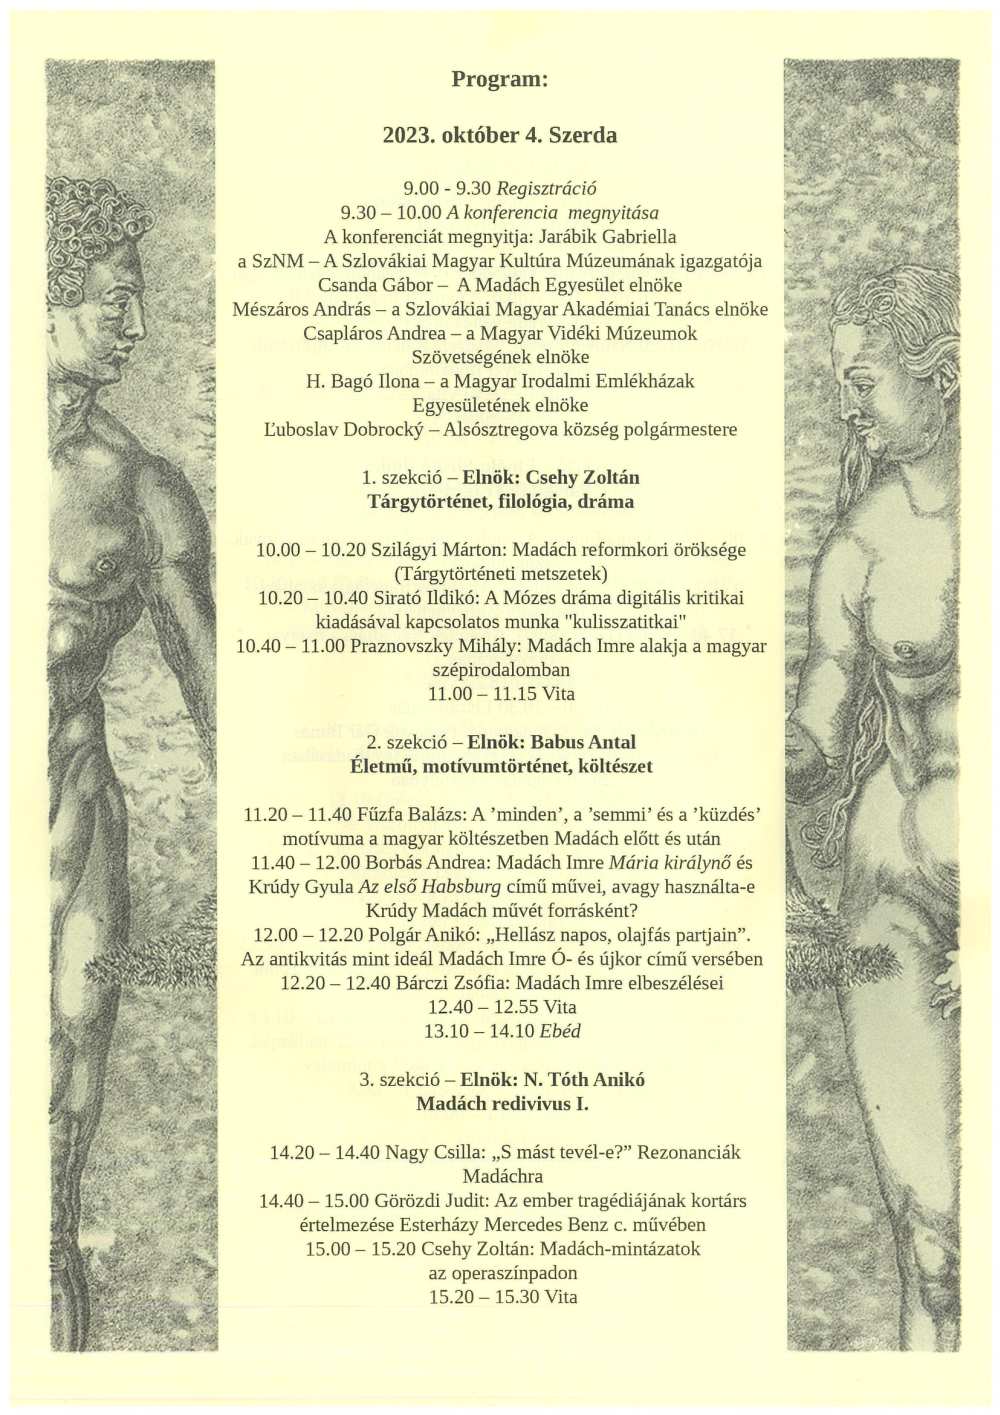 A Madách évszázadai című nemzetközi tudományos konferencia programja